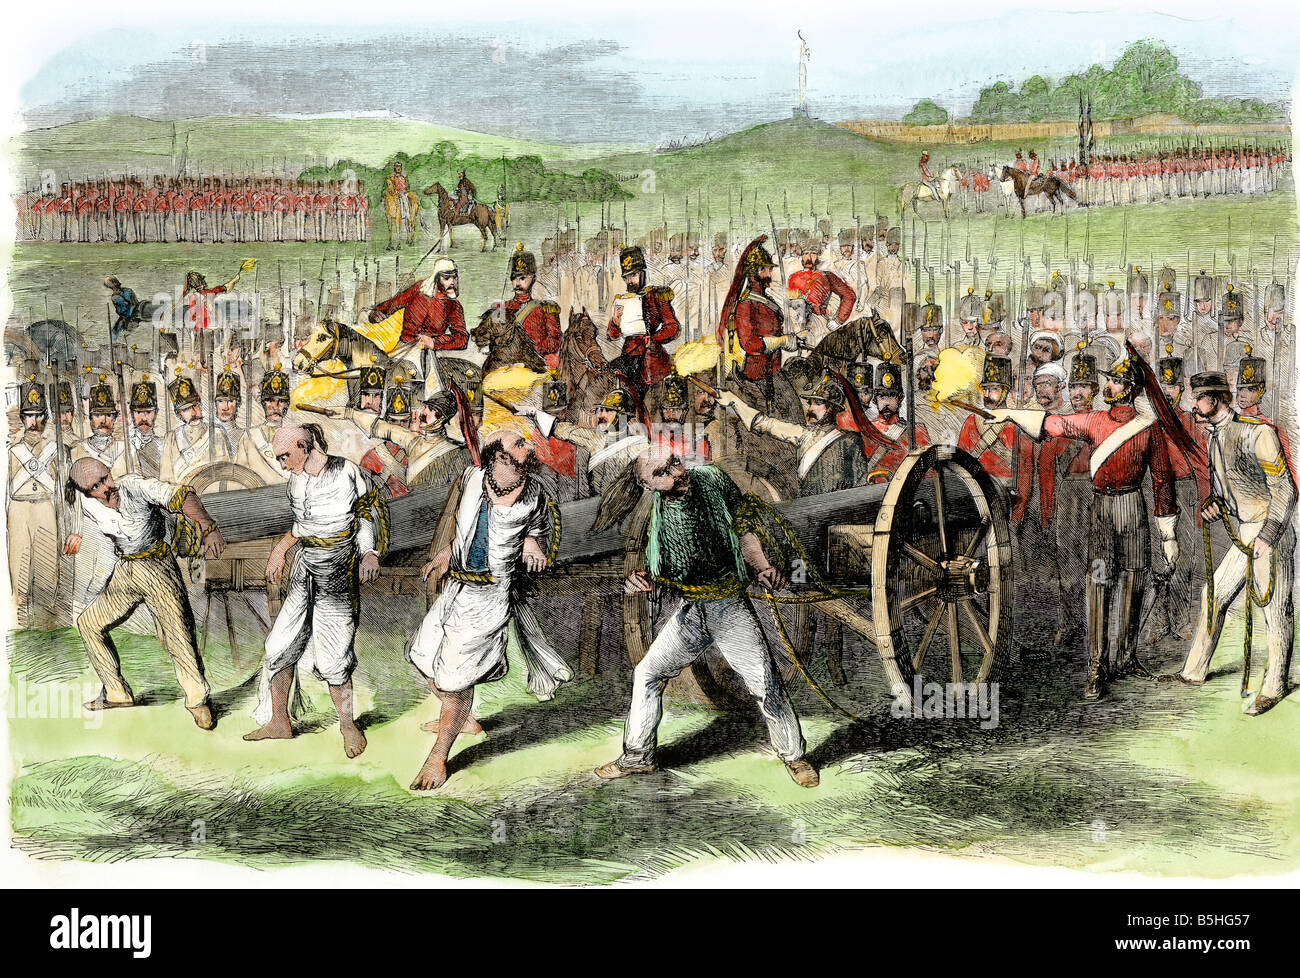 Exécution militaire britannique Sepoys en les attachant à canons pendant la rebeliion en Inde 1857. À la main, gravure sur bois Banque D'Images